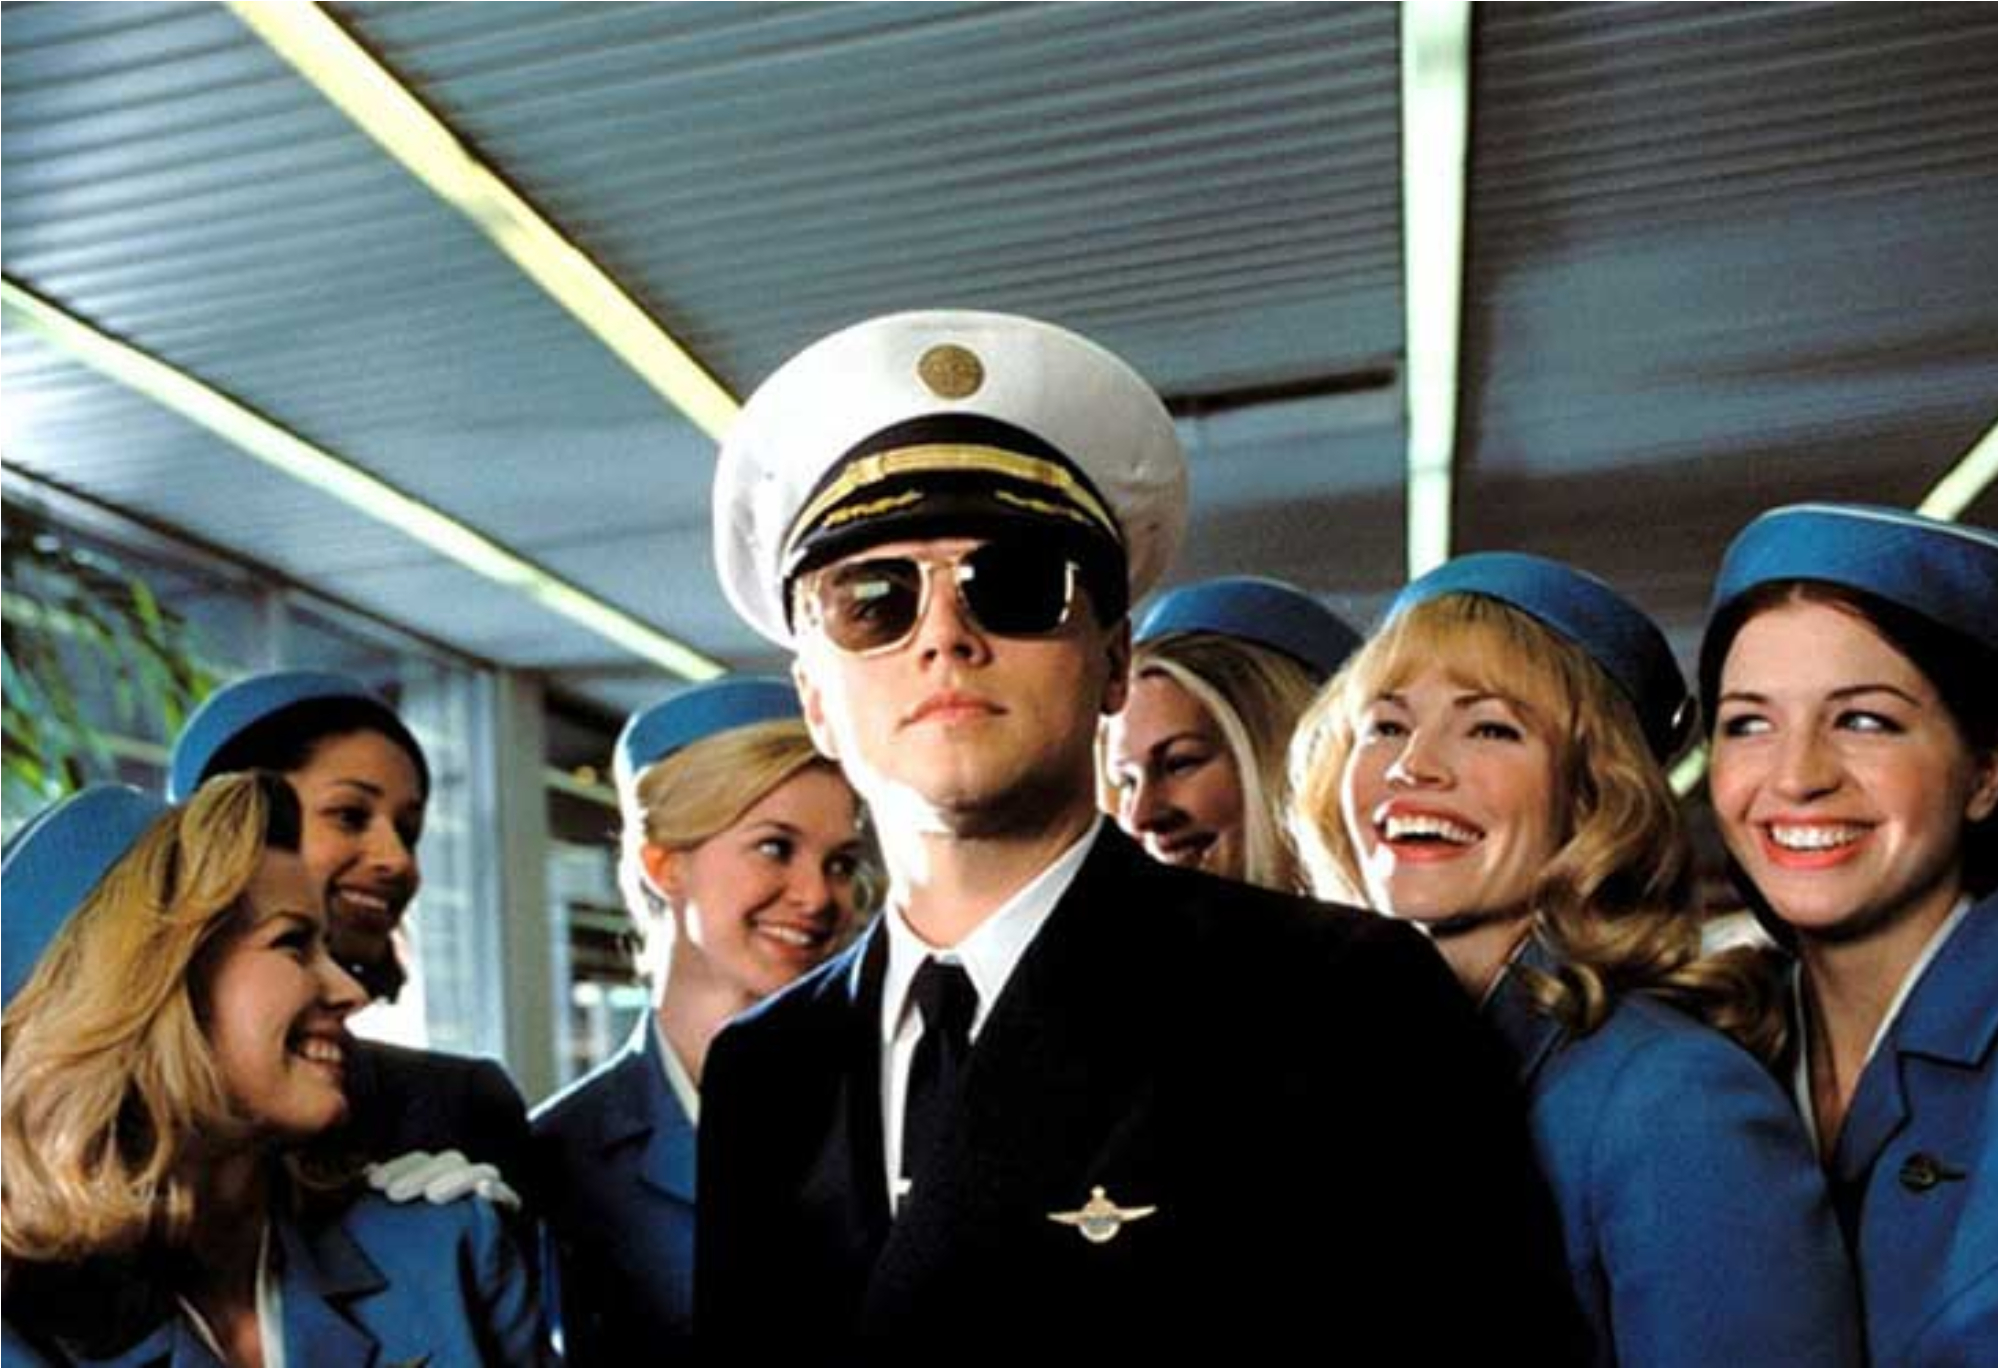 Catch Me If You Can: Ο απατεώνας Frank Abagnale Jr που ταξίδευε με ψεύτικα έγγραφα έκλεβε τεράστια ποσά και τον υποδύθηκε ο Leonardo DiCaprio 